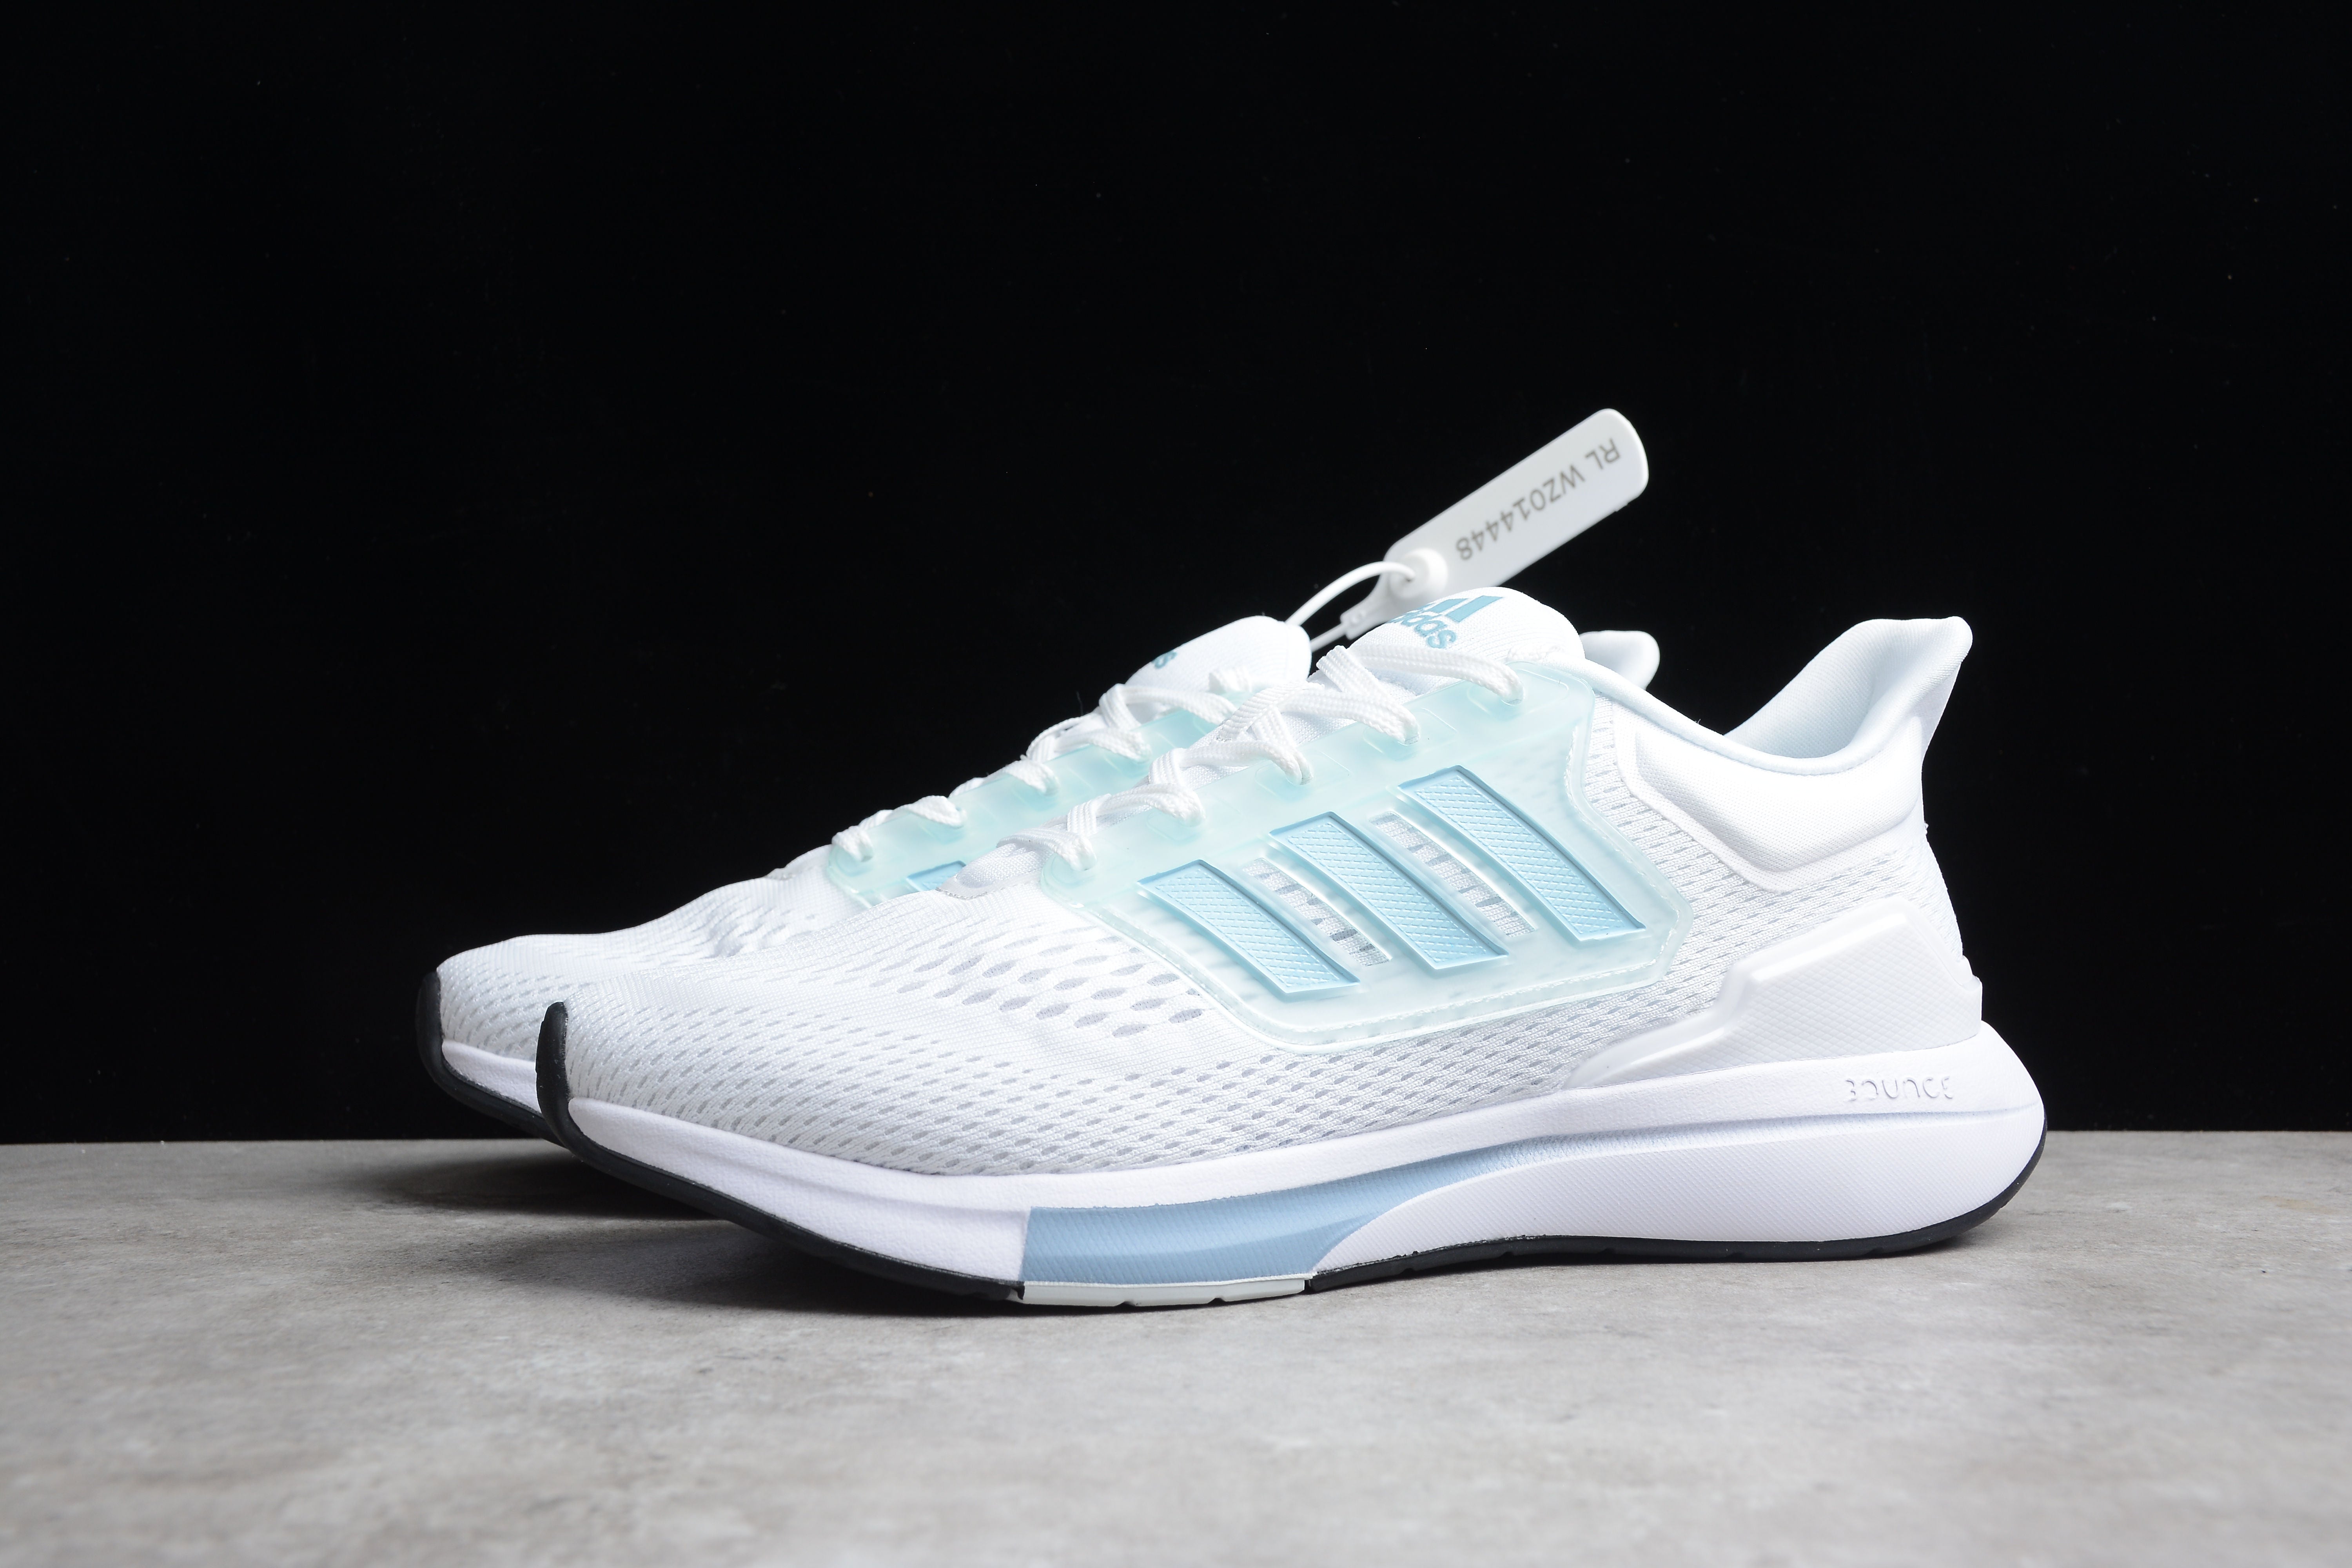 Adidas EQ21 RUN white and blue